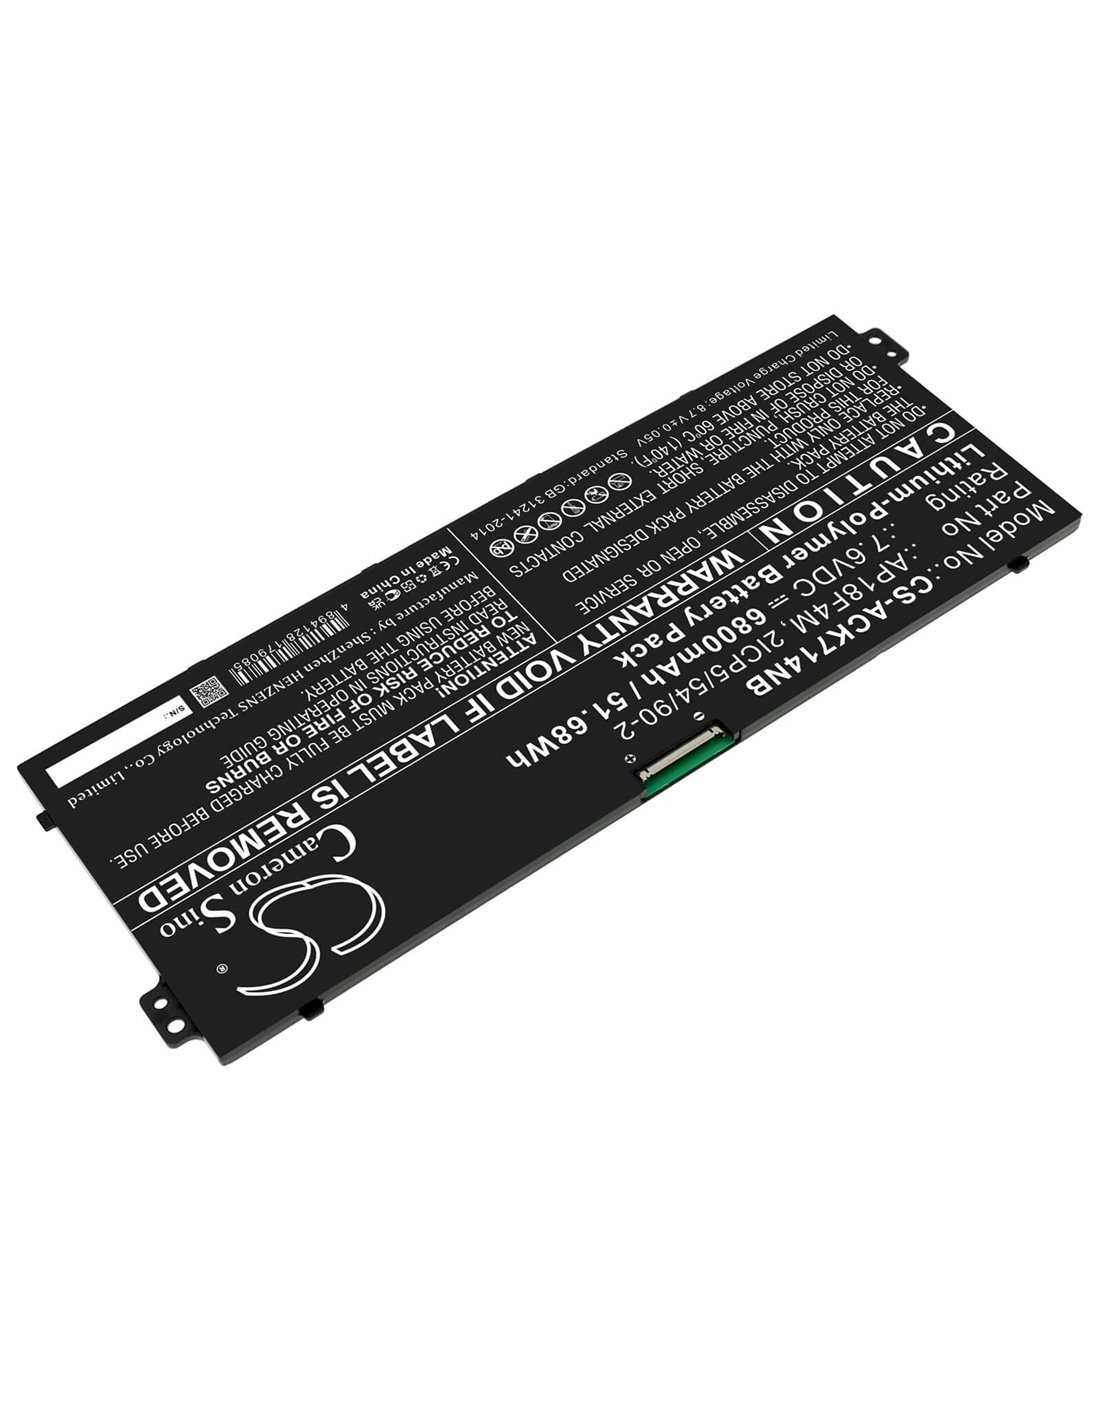 7.6V, Li-Polymer, 6800mAh, Battery fits Acer Cchromebook 715 Cb715-1w-57cc, Chromebook 714 Cb714-1w-3313, 51.68Wh